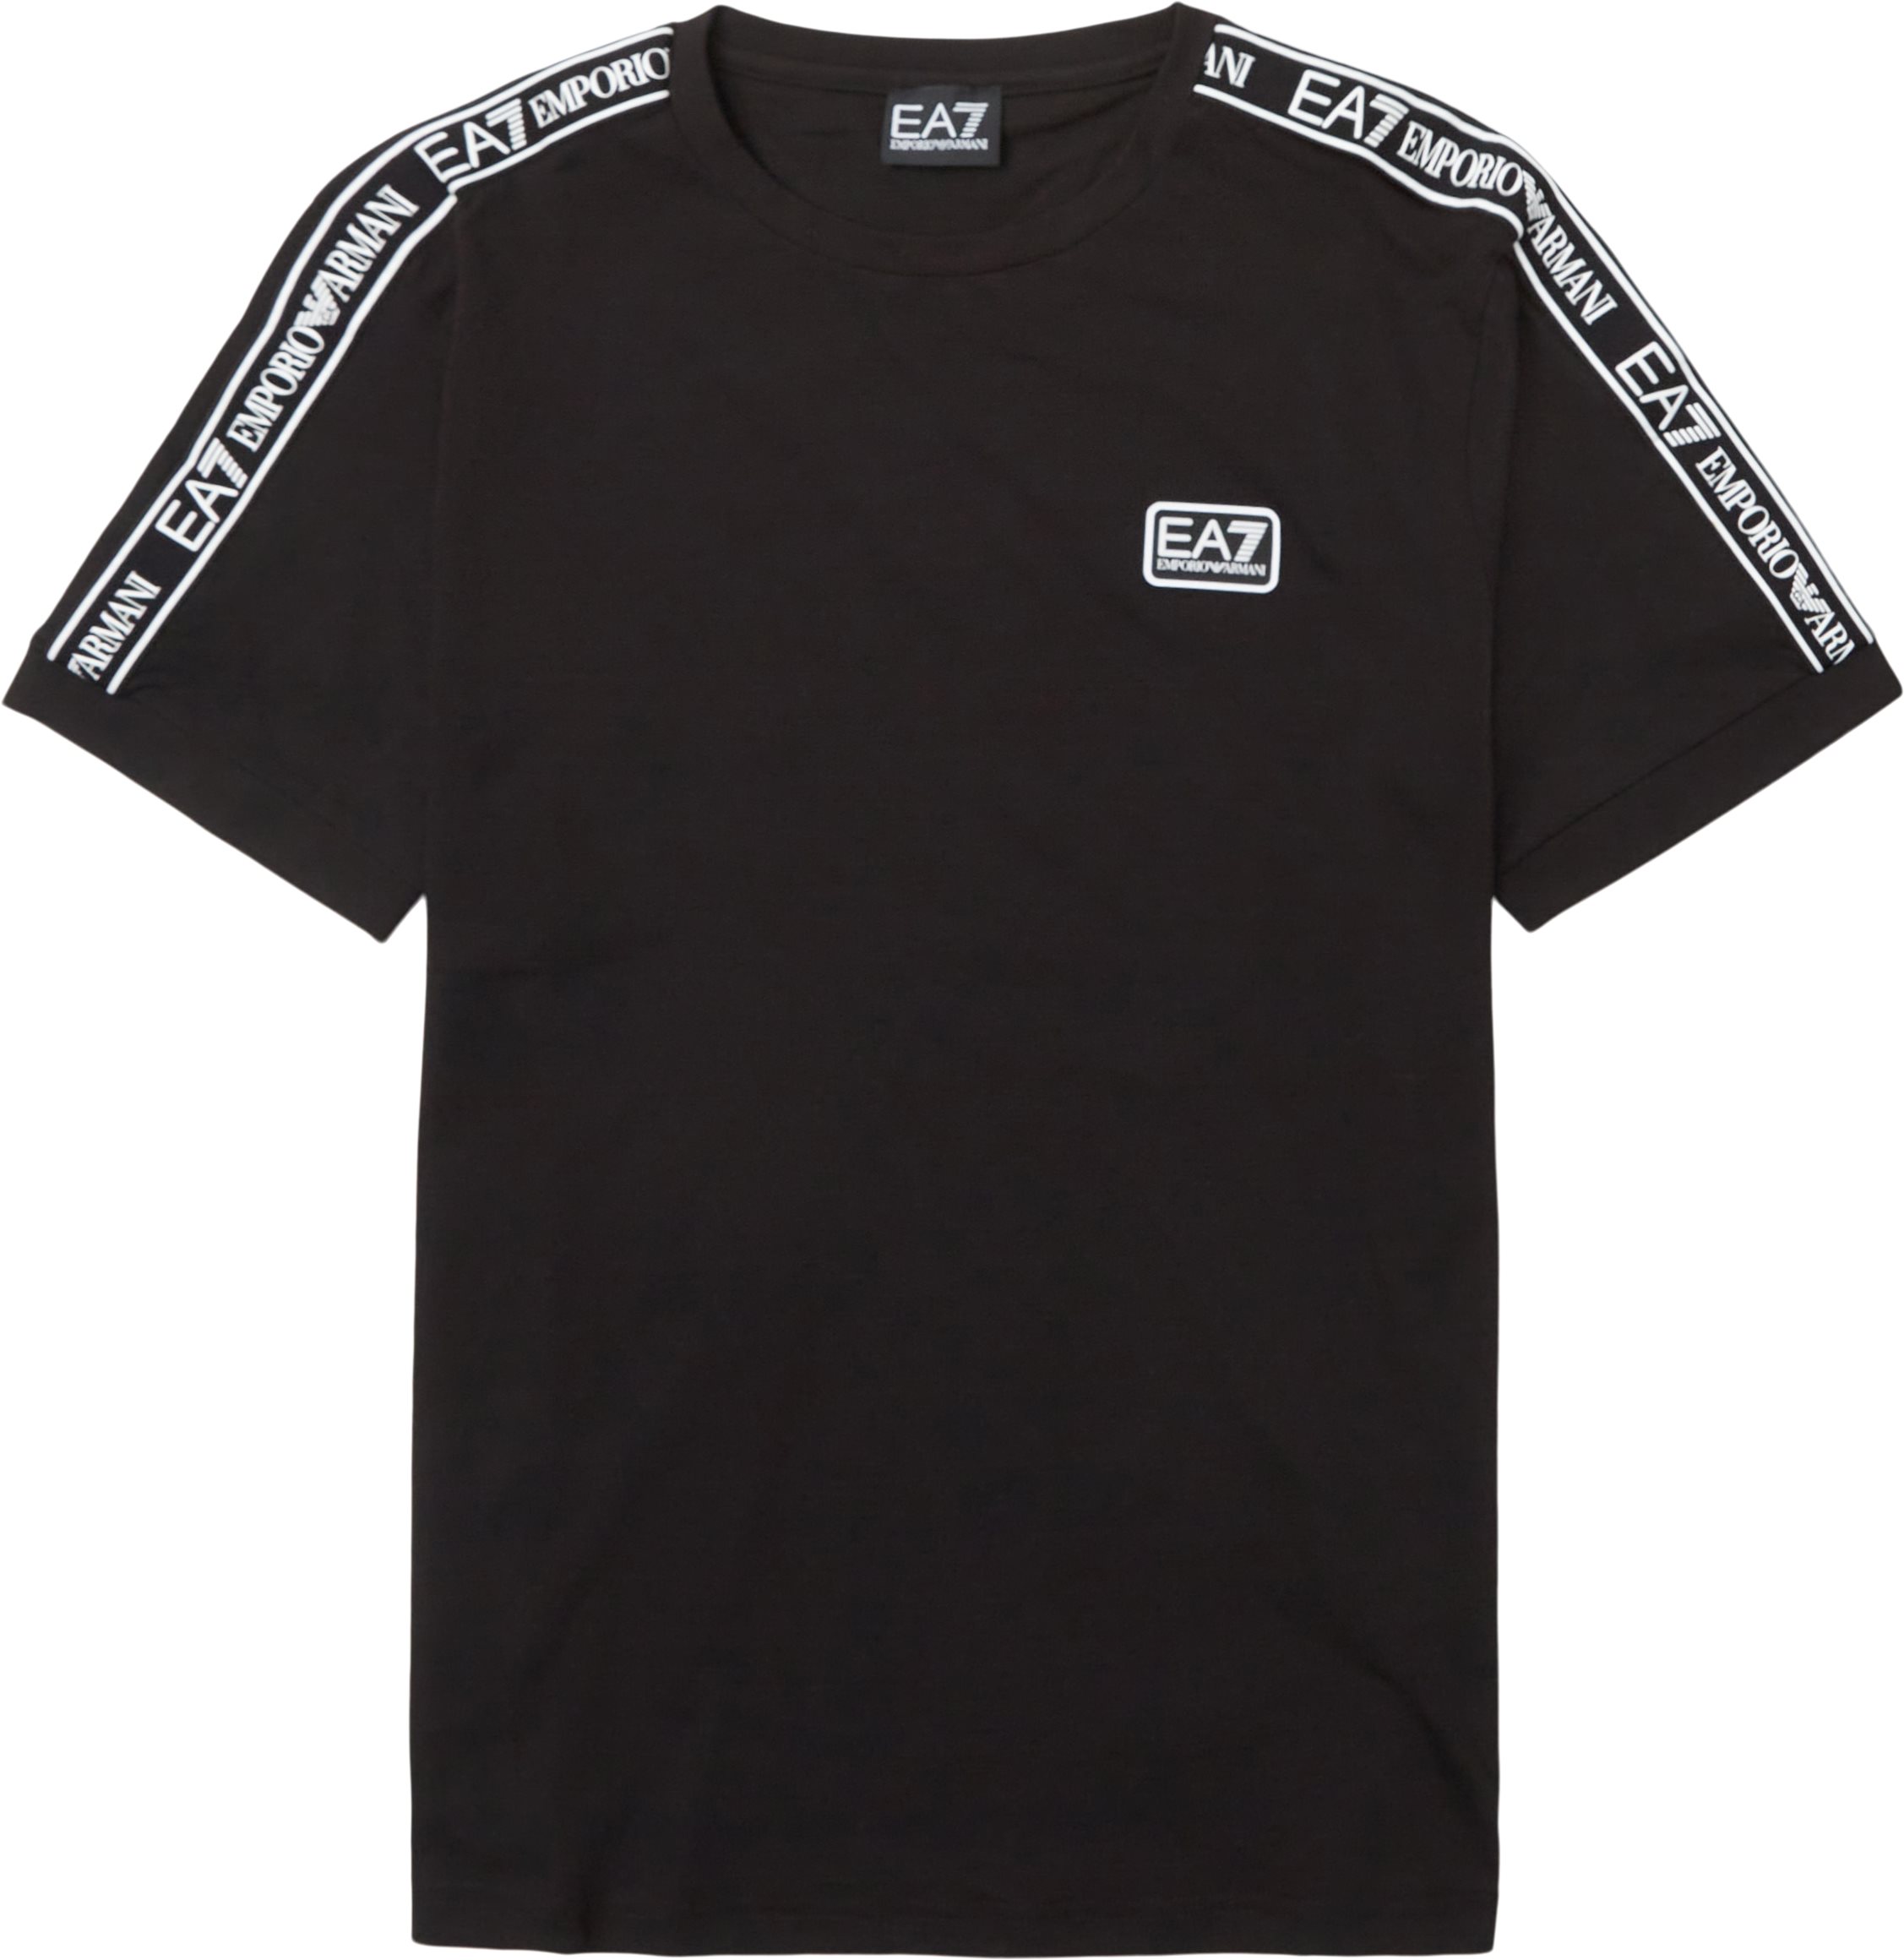 Pjo2z-3lpt18 - T-shirts - Regular fit - Svart